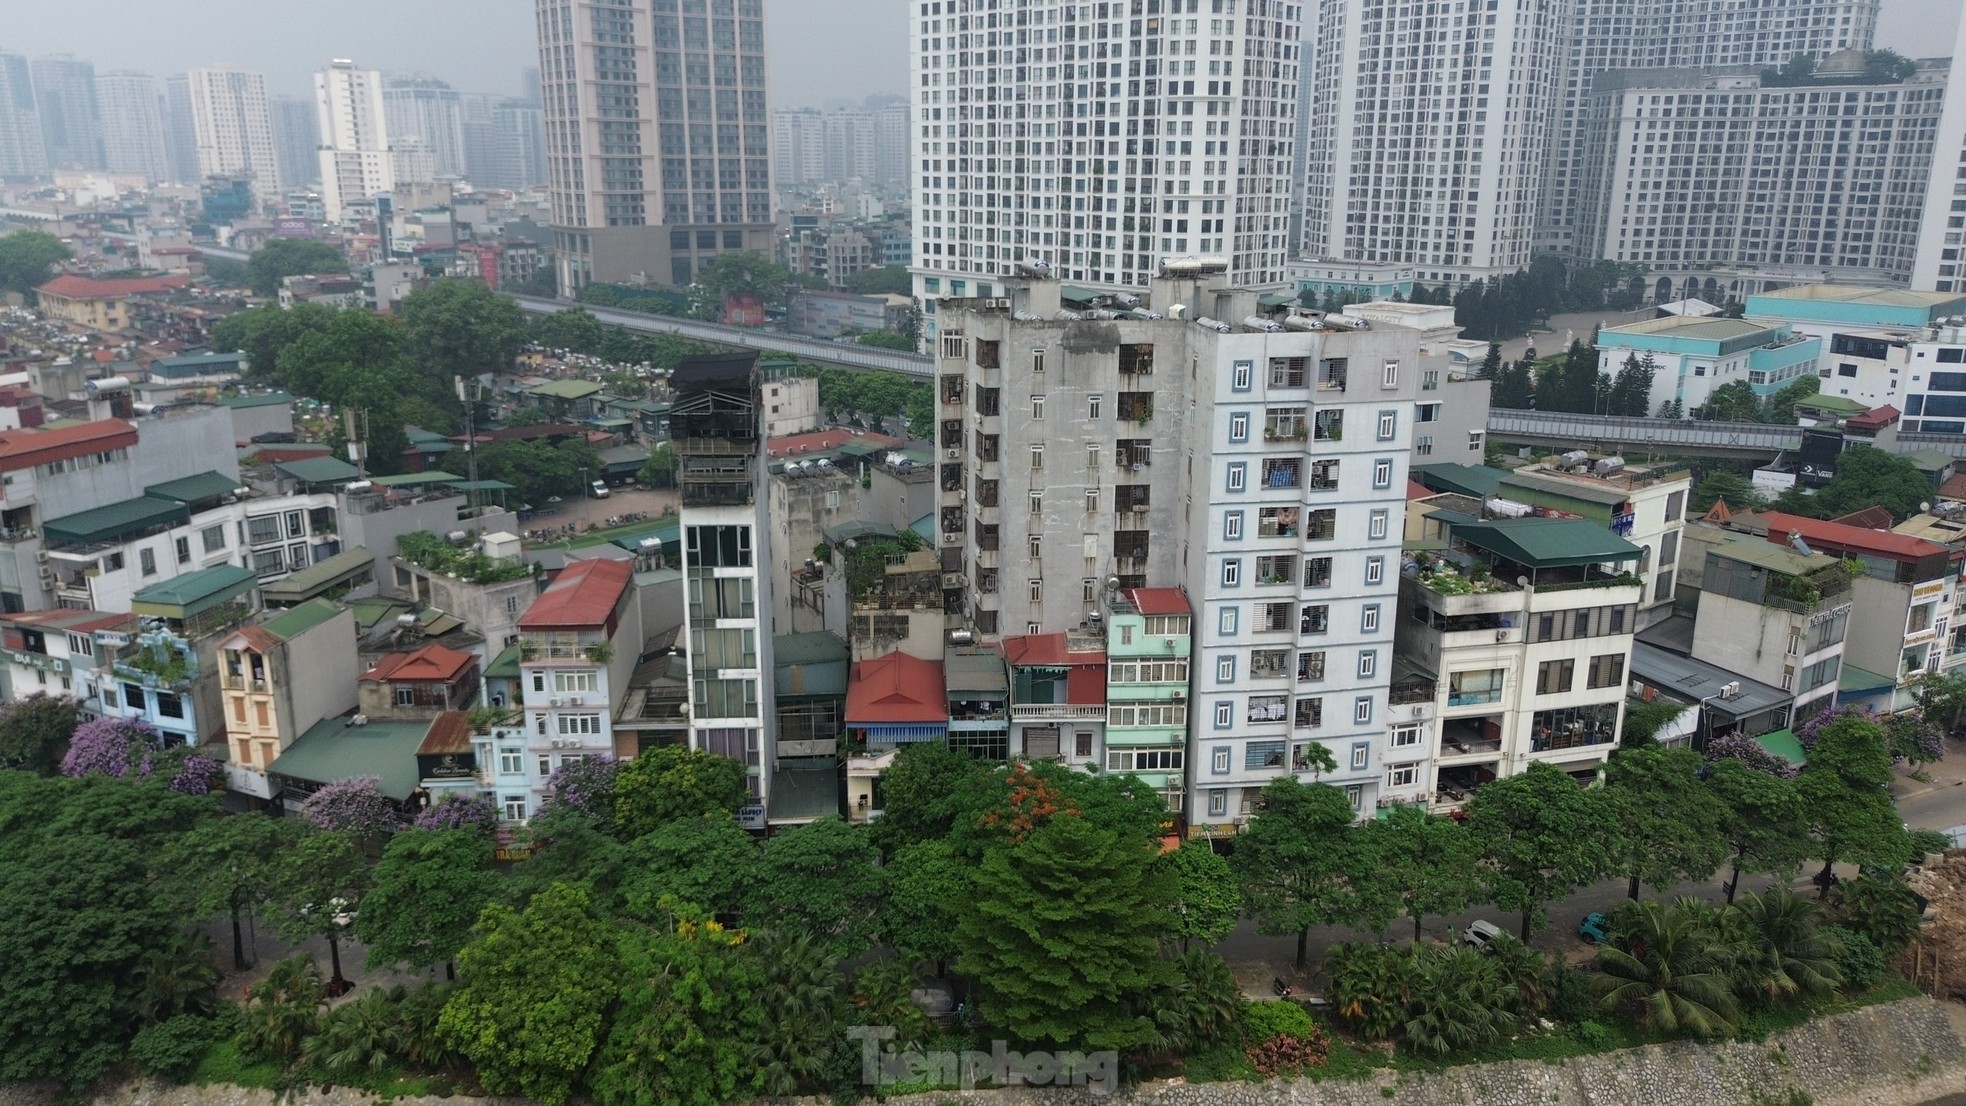 Nhà trọ, chung cư mini tràn lan không đảm bảo phòng cháy chữa cháy ở Hà Nội - Ảnh 11